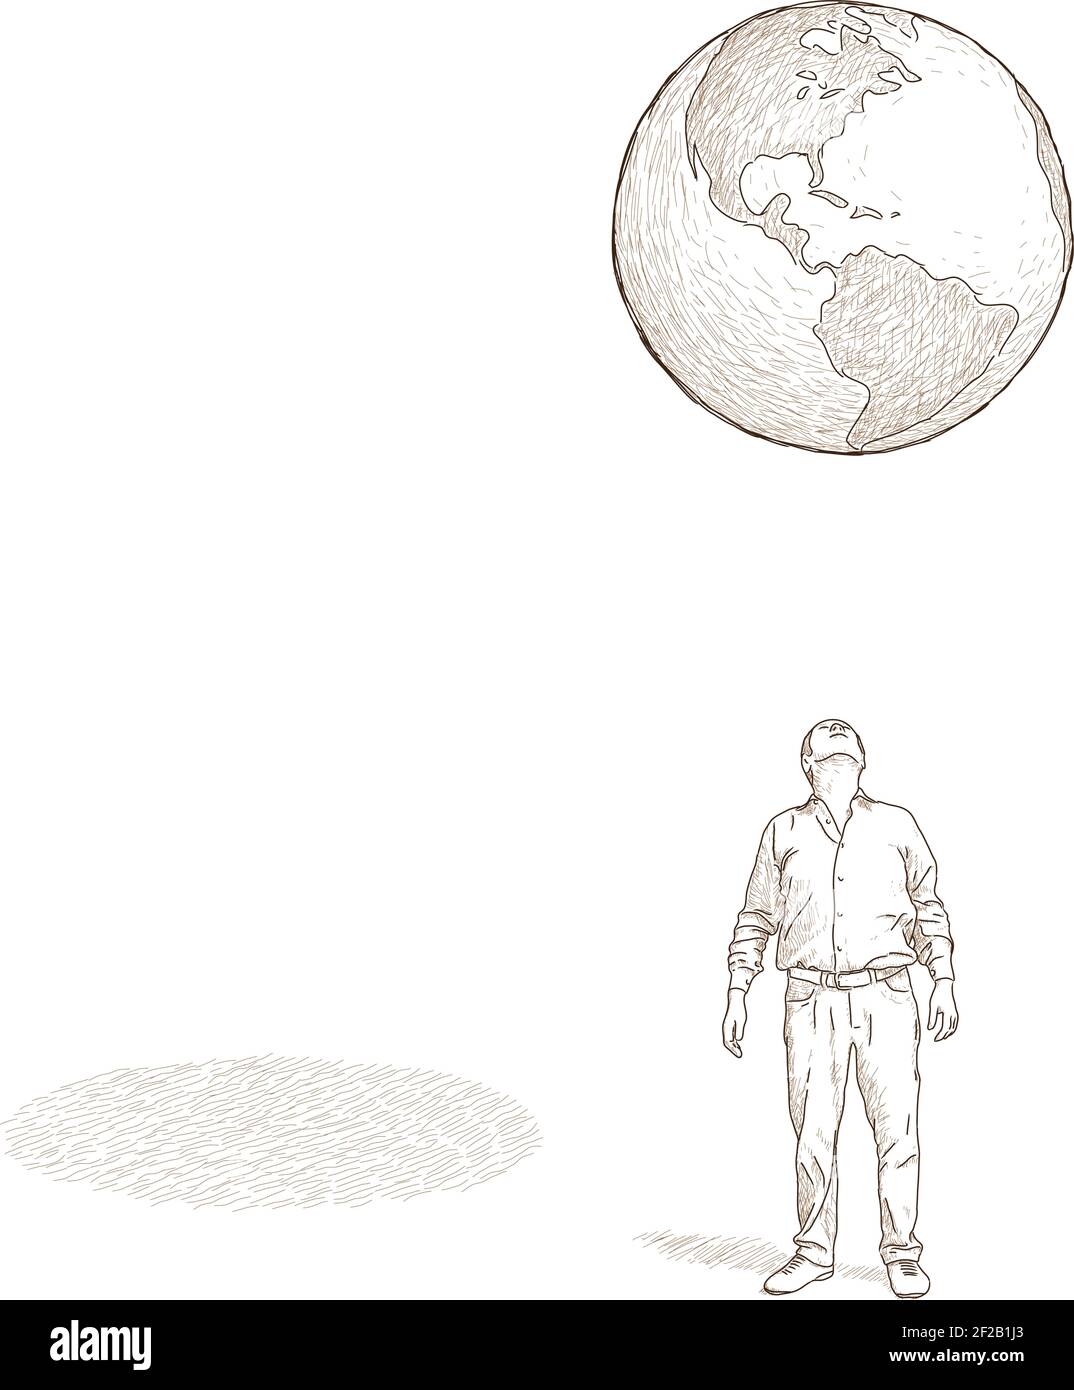 Uomo che guarda il globo. Il problema della sostenibilità ambientale. Disegno vettoriale a mano libera. Illustrazione Vettoriale